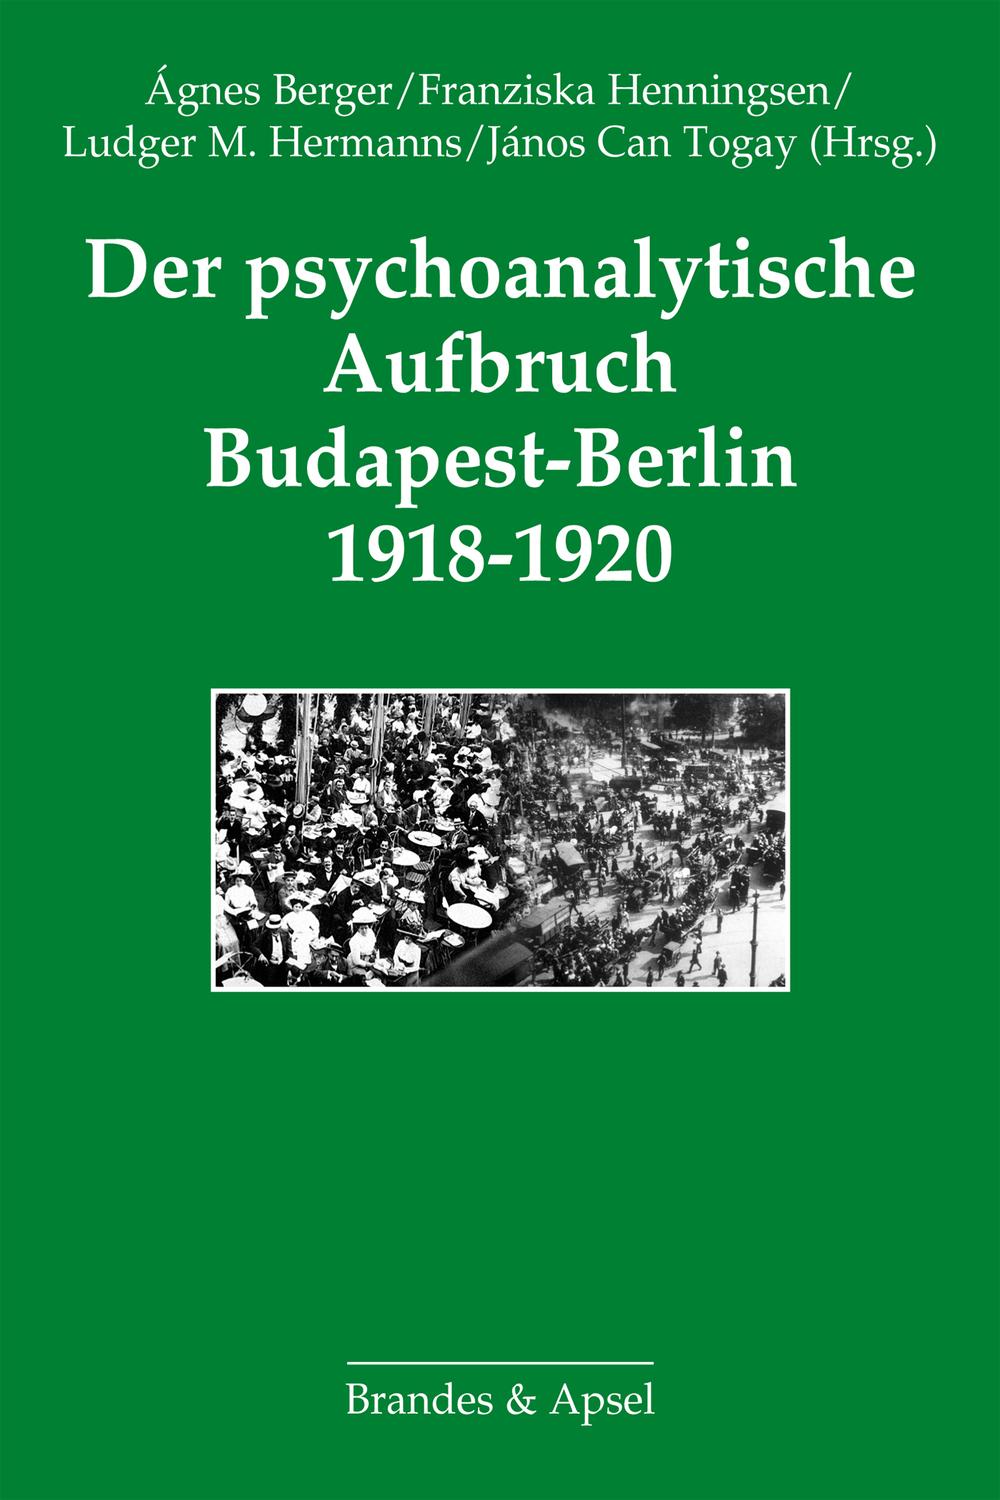 Der psychoanalytische Aufbruch Budapest-Berlin 1918-1920 - Ágnes Berger, Franziska Henningsen, Ludger M. Hermanns, János Can Togay